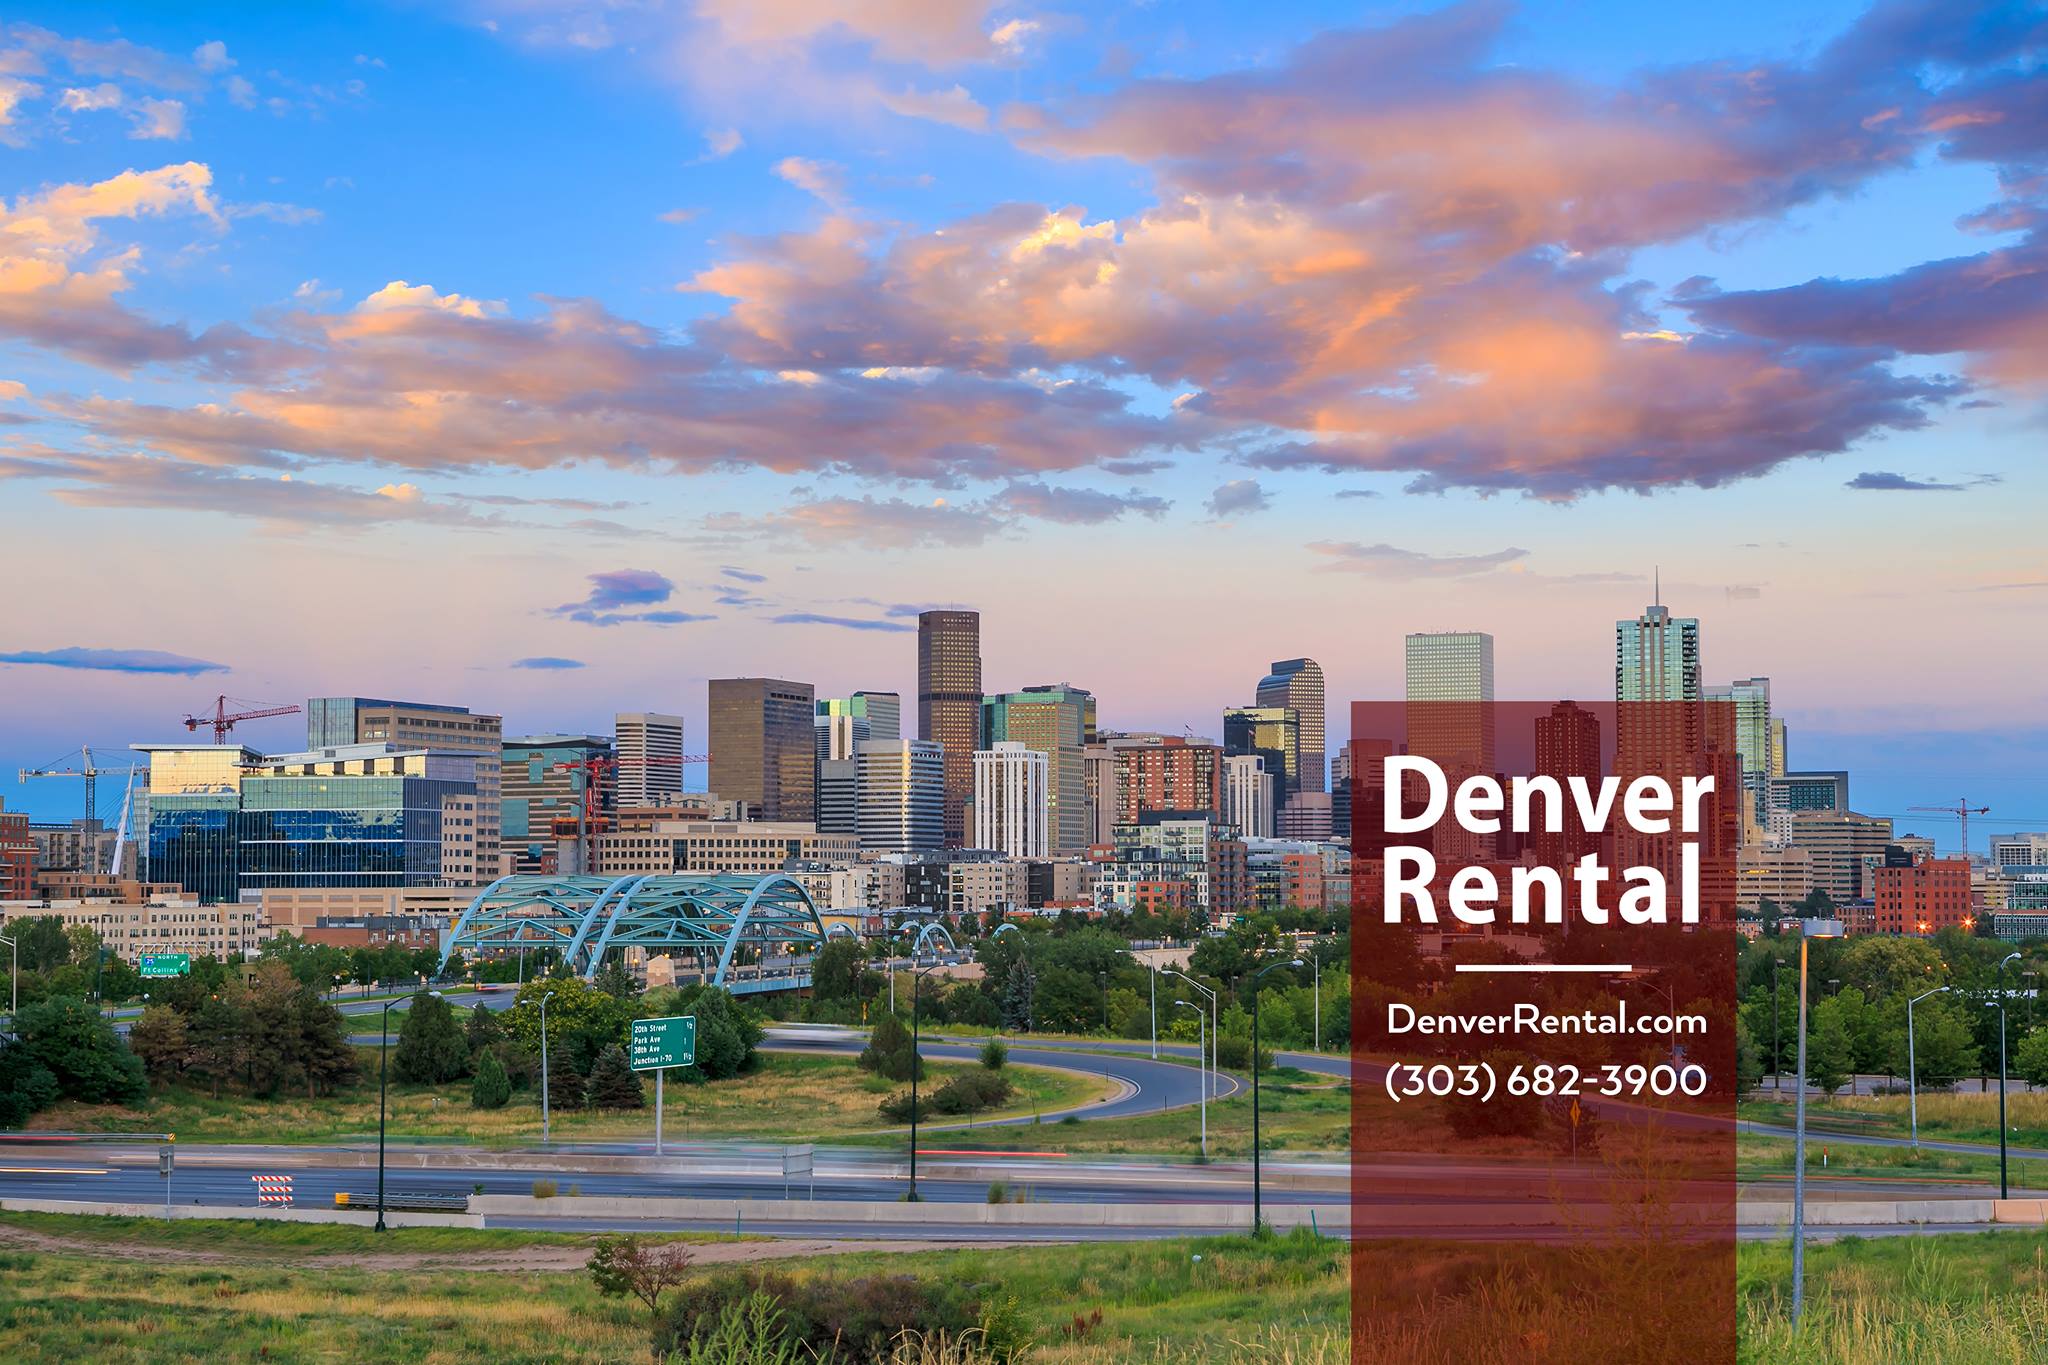 Denver Rental